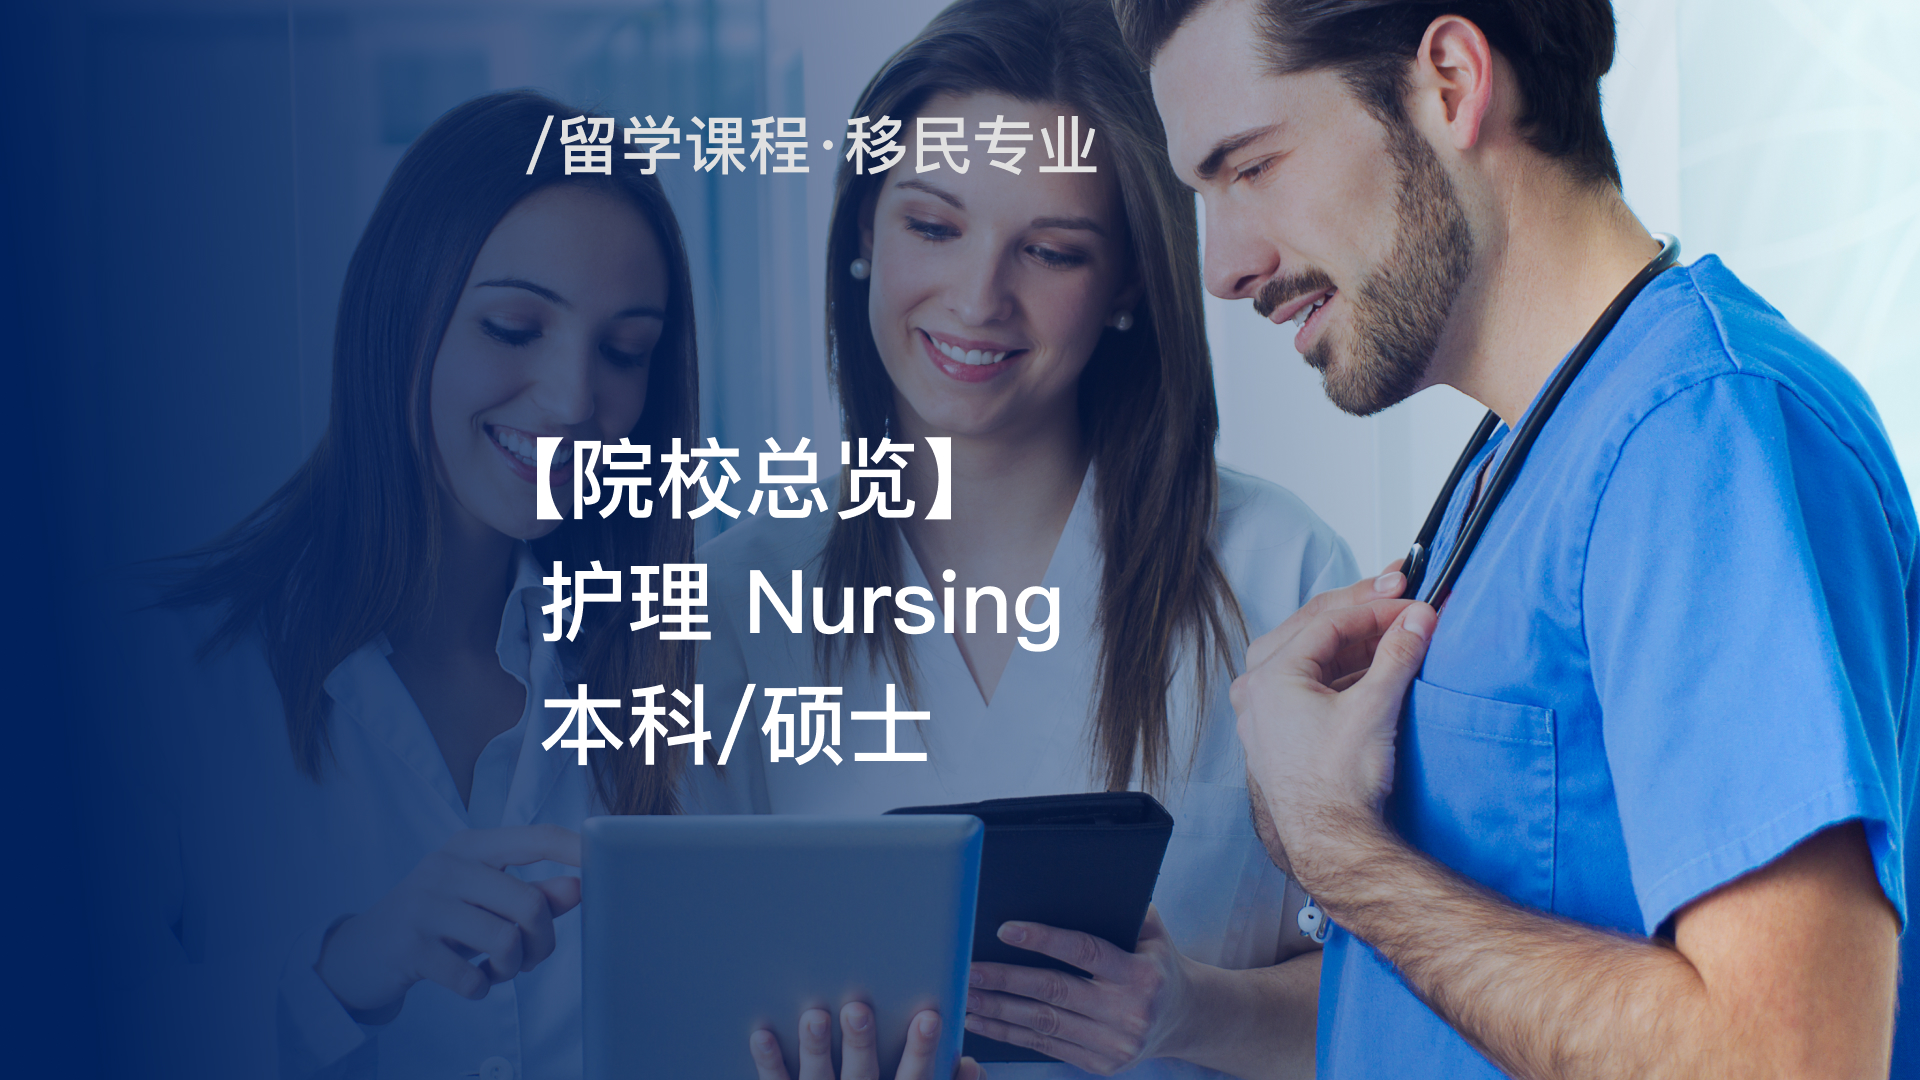 【院校总览】 护理本科/硕士 Nursing